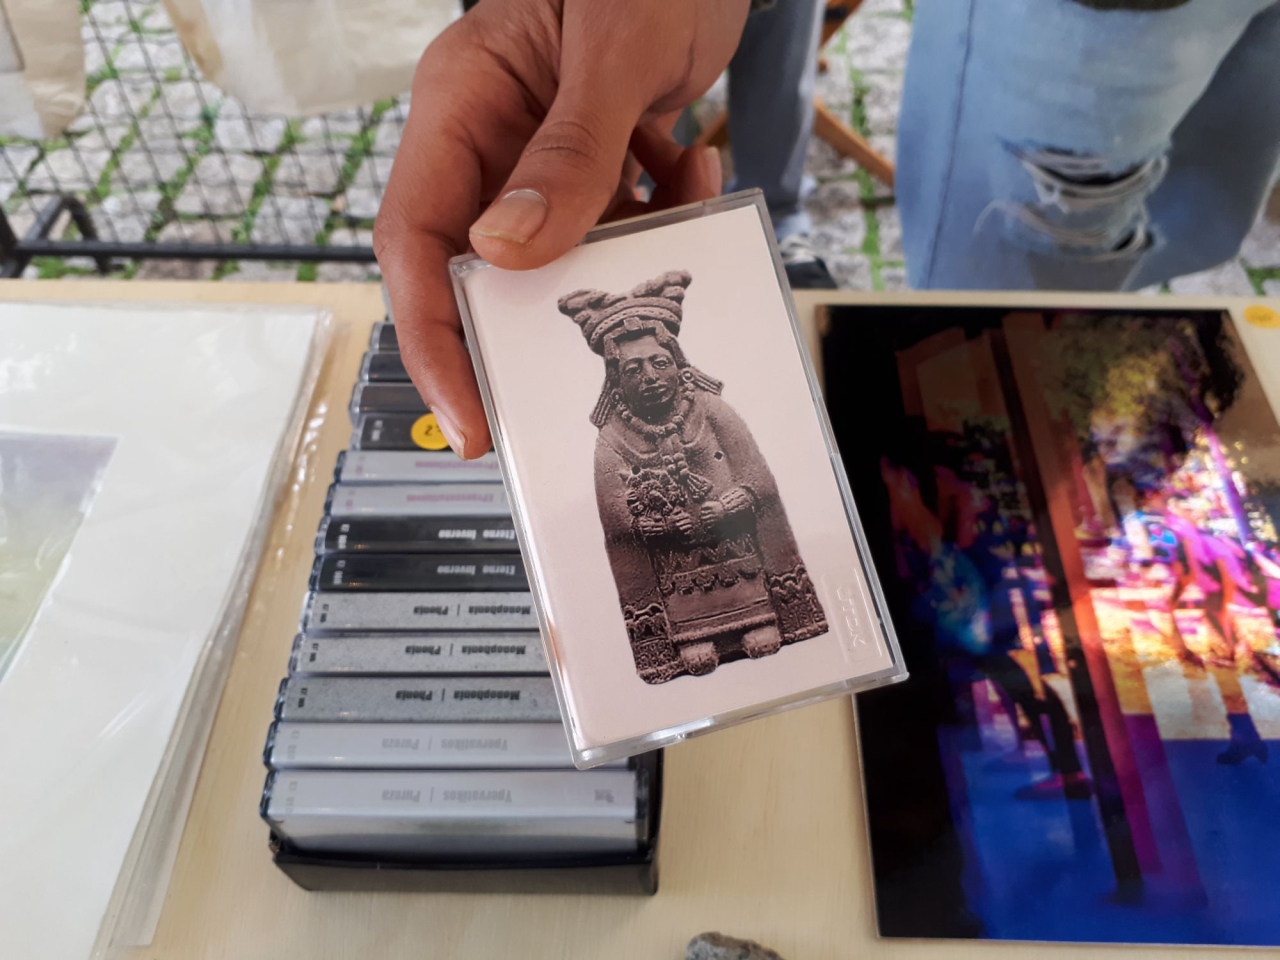 As fitas cassete do selo Distopia são produzidas à mão, com cases de fitas antigas. Foto: Matheus Nascimento/Gazeta do Povo.